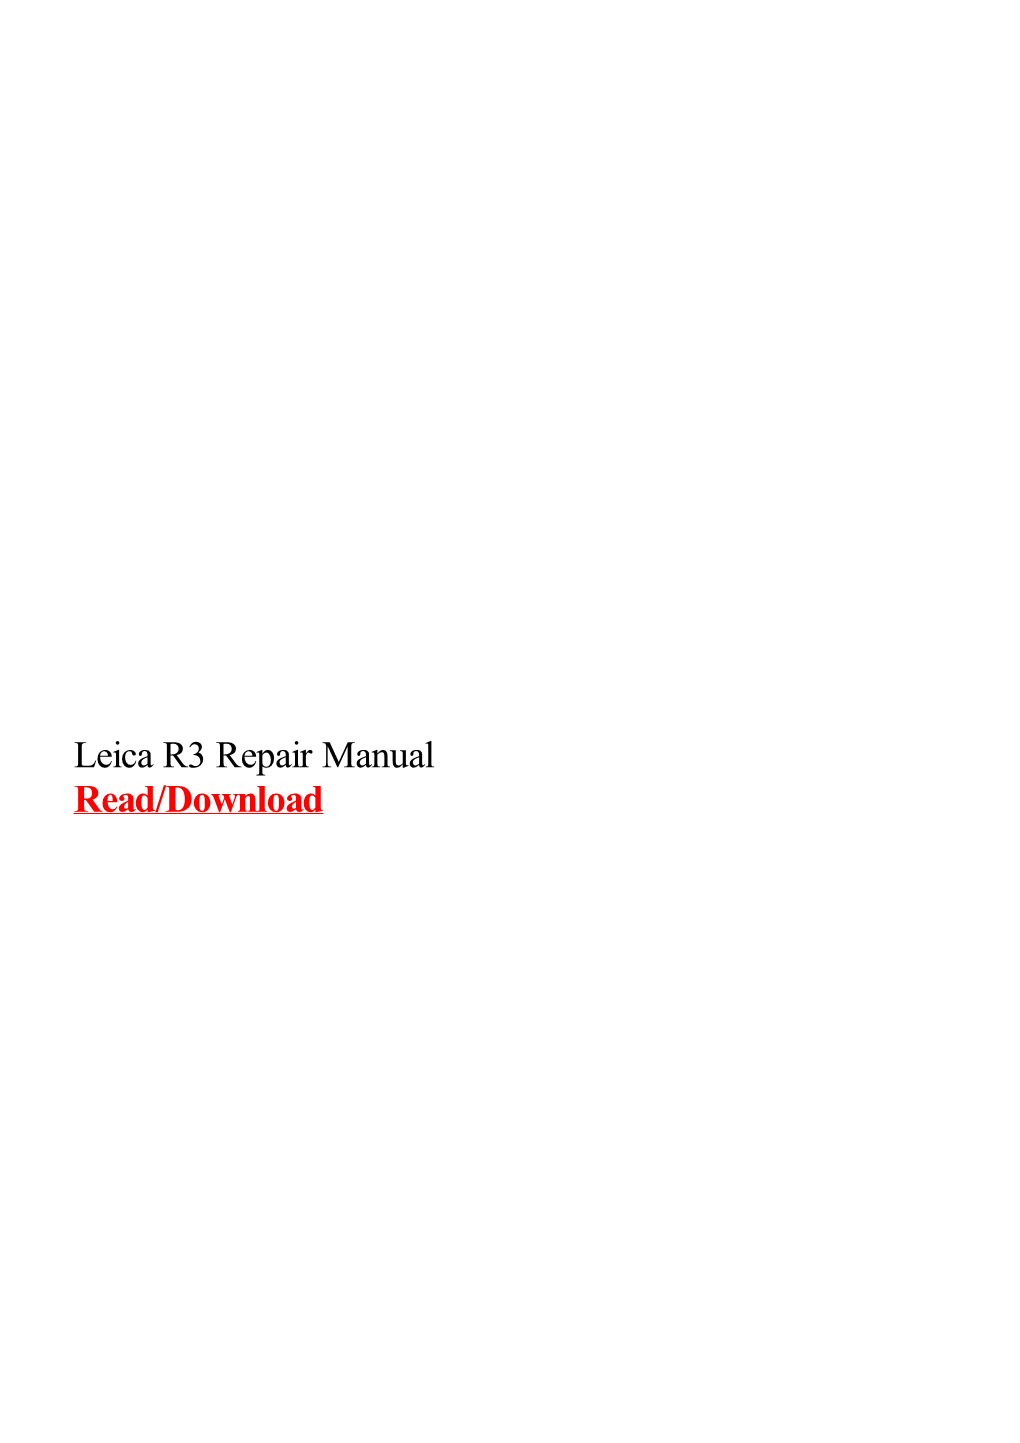 Leica R3 Repair Manual